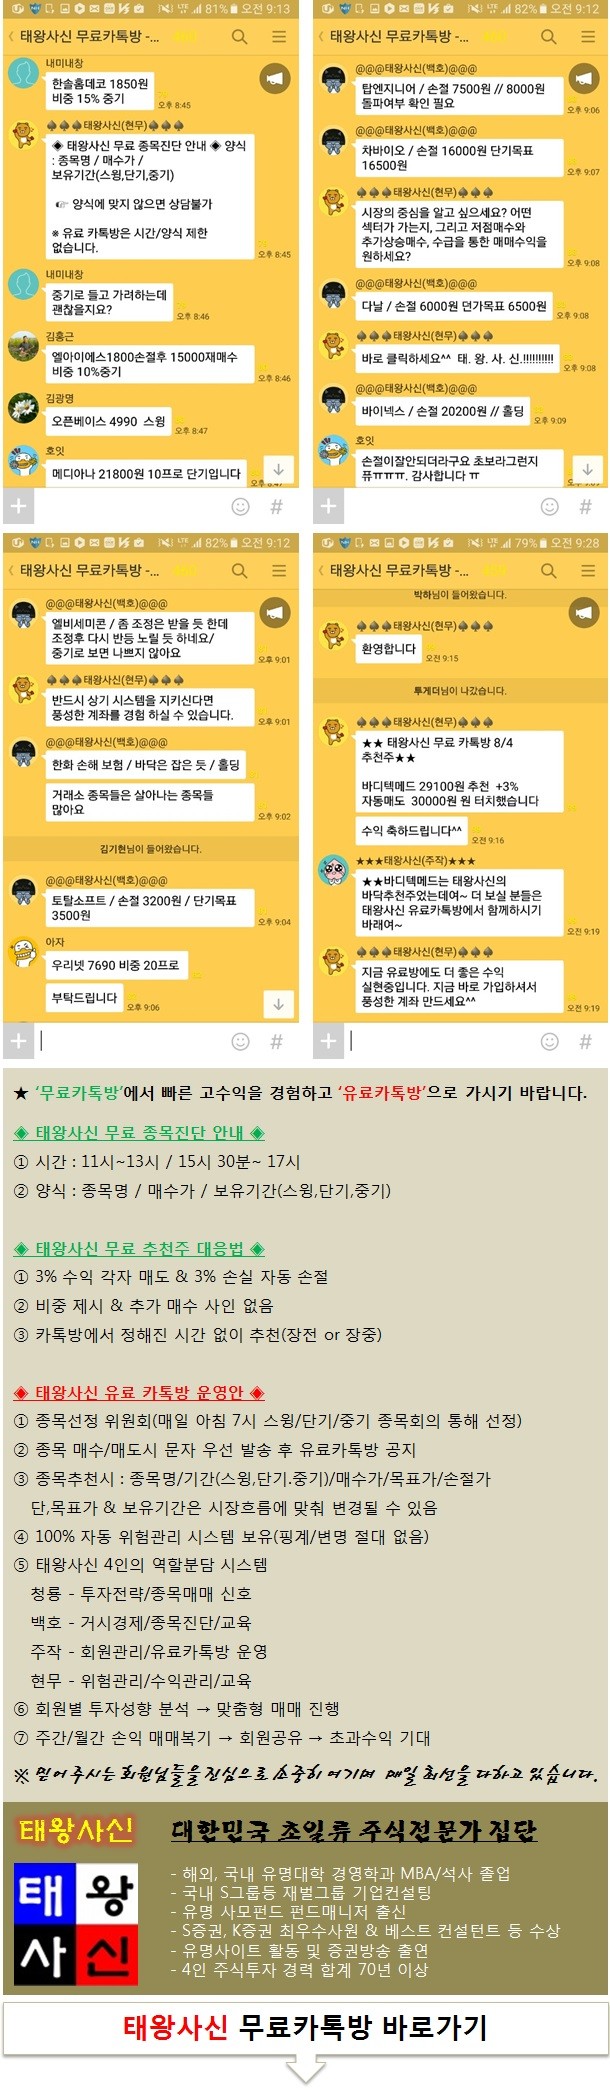 초일류 주식전문가 집단 ‘태왕사신’ 공개추천주